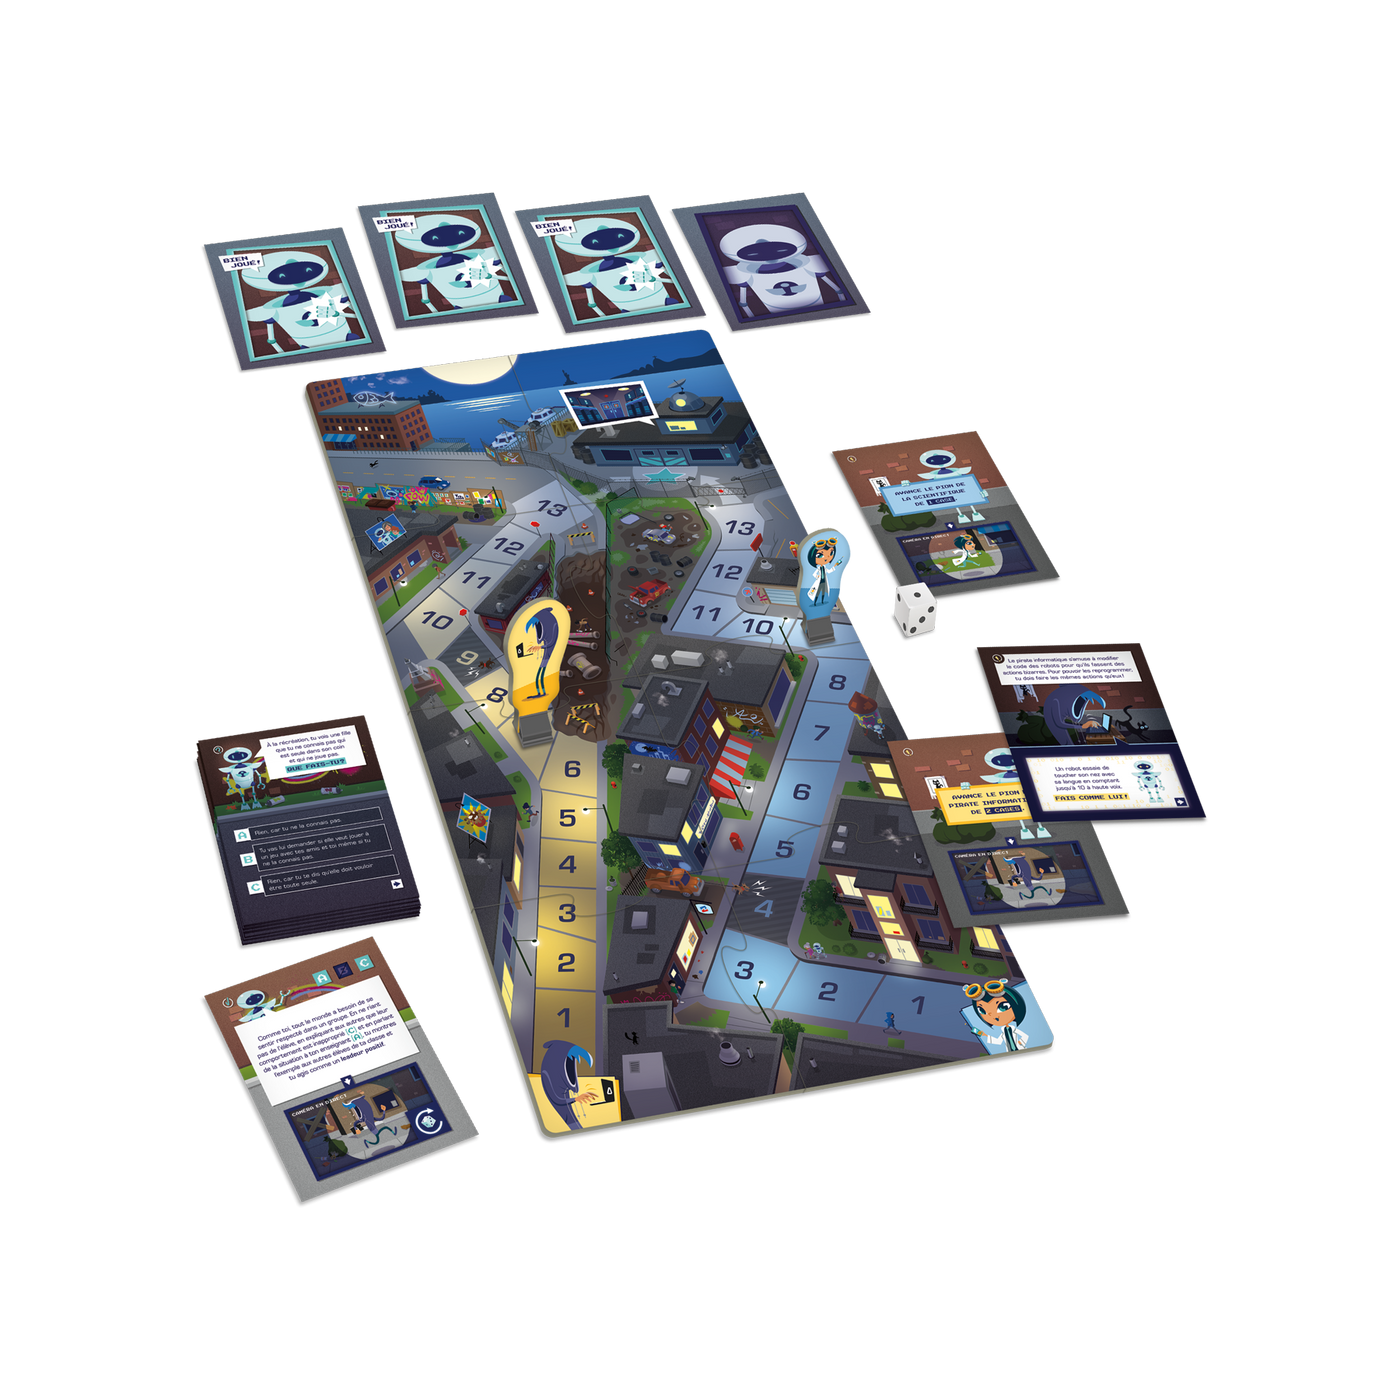 Le code social - Composantes du jeu : planche (ville nocturne), cartes-questions/défis, cartes « Bien joué! », 2 pions et dé